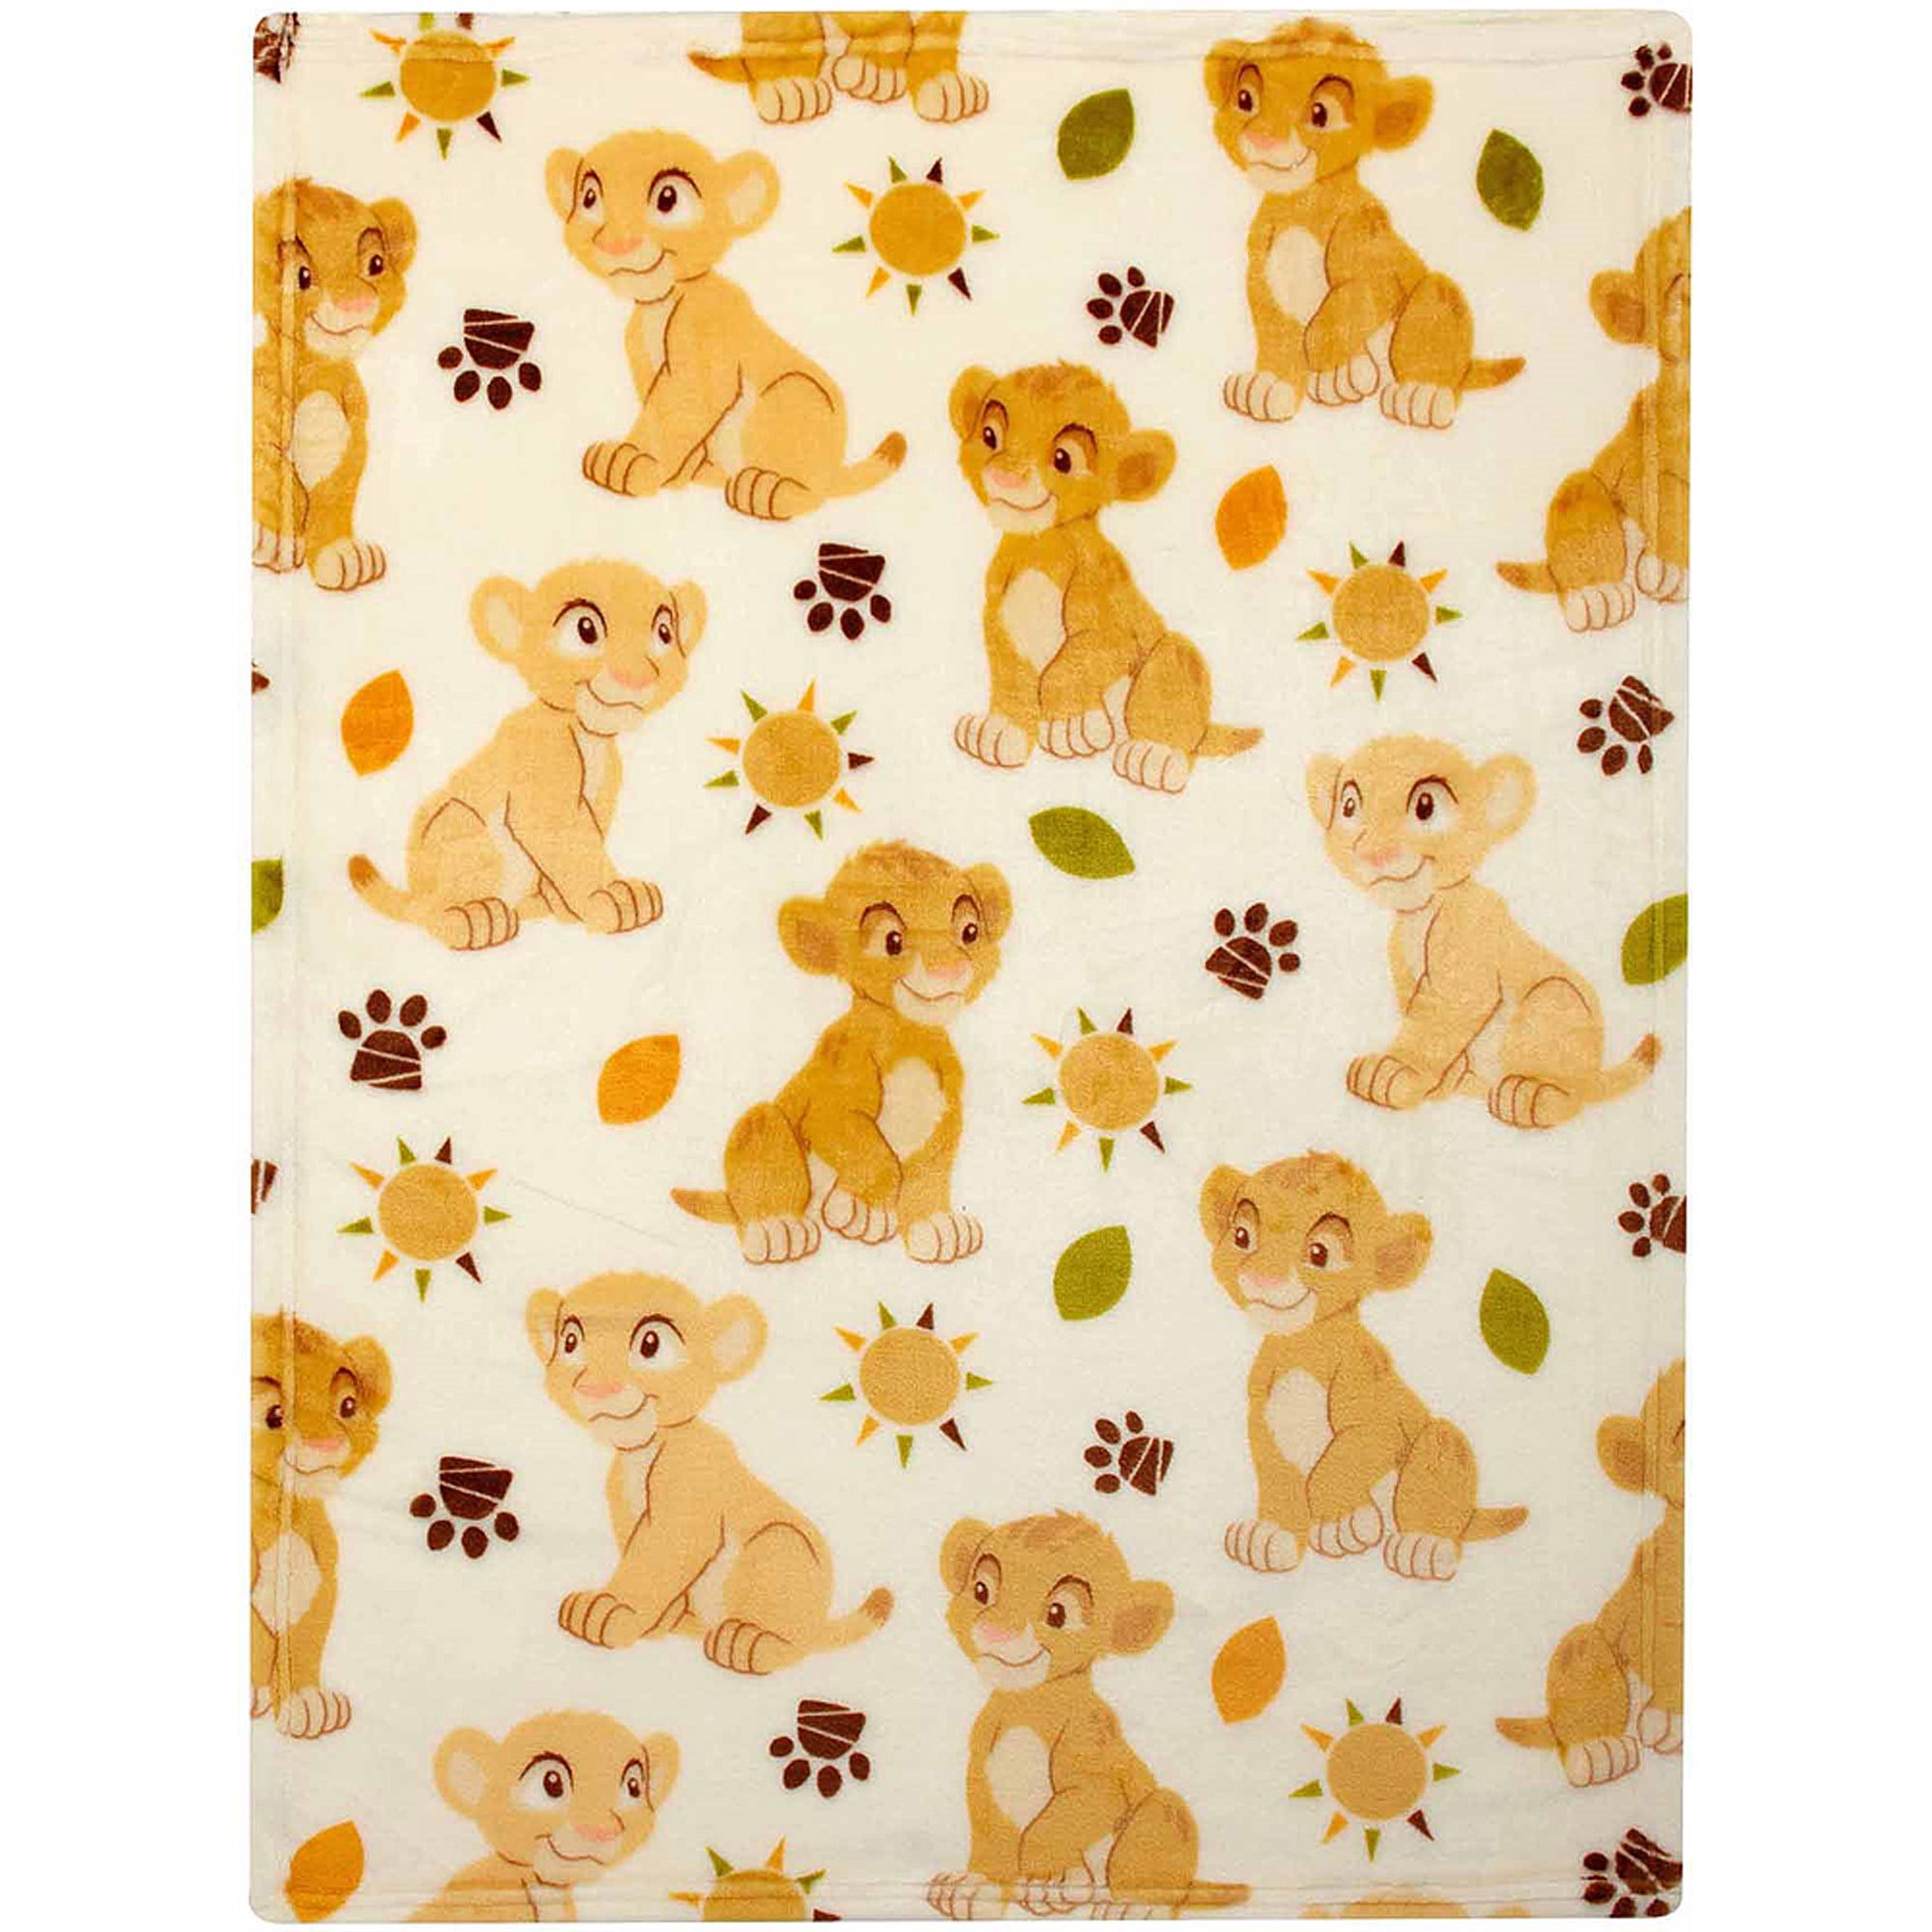 Disney Lion King Plush Printed Blanket 